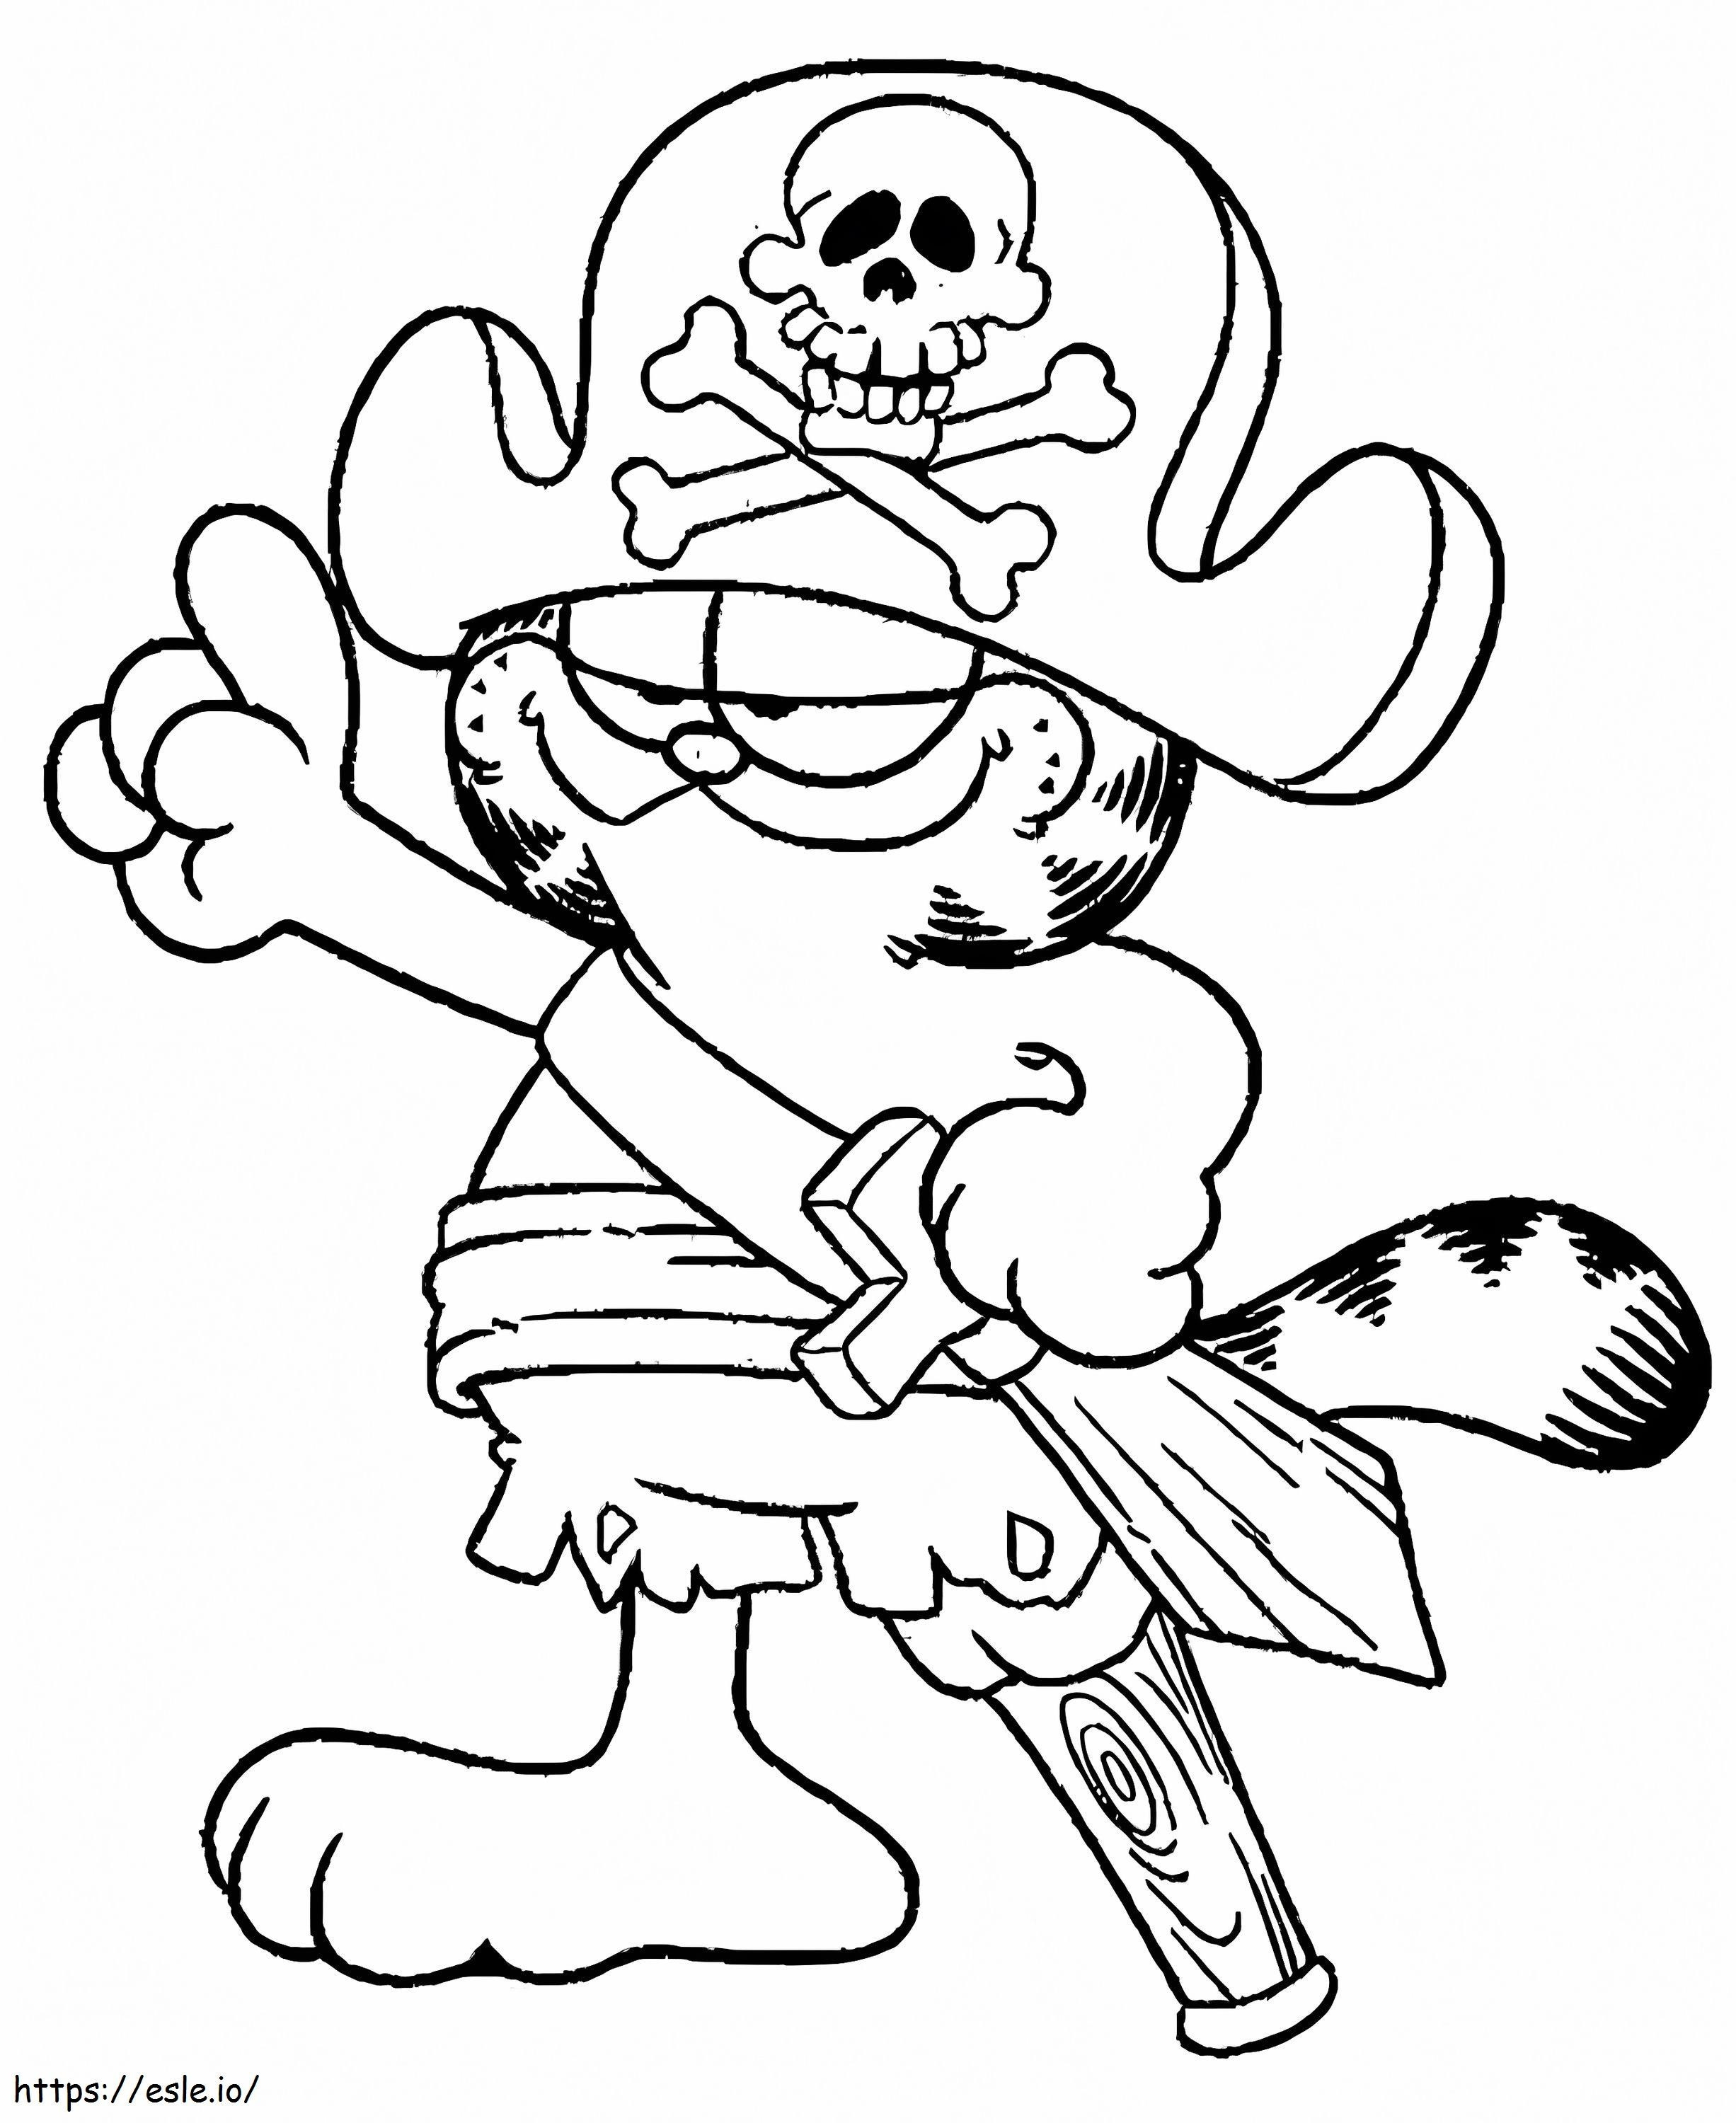 Coloriage L'Équipage de Garfield à imprimer dessin